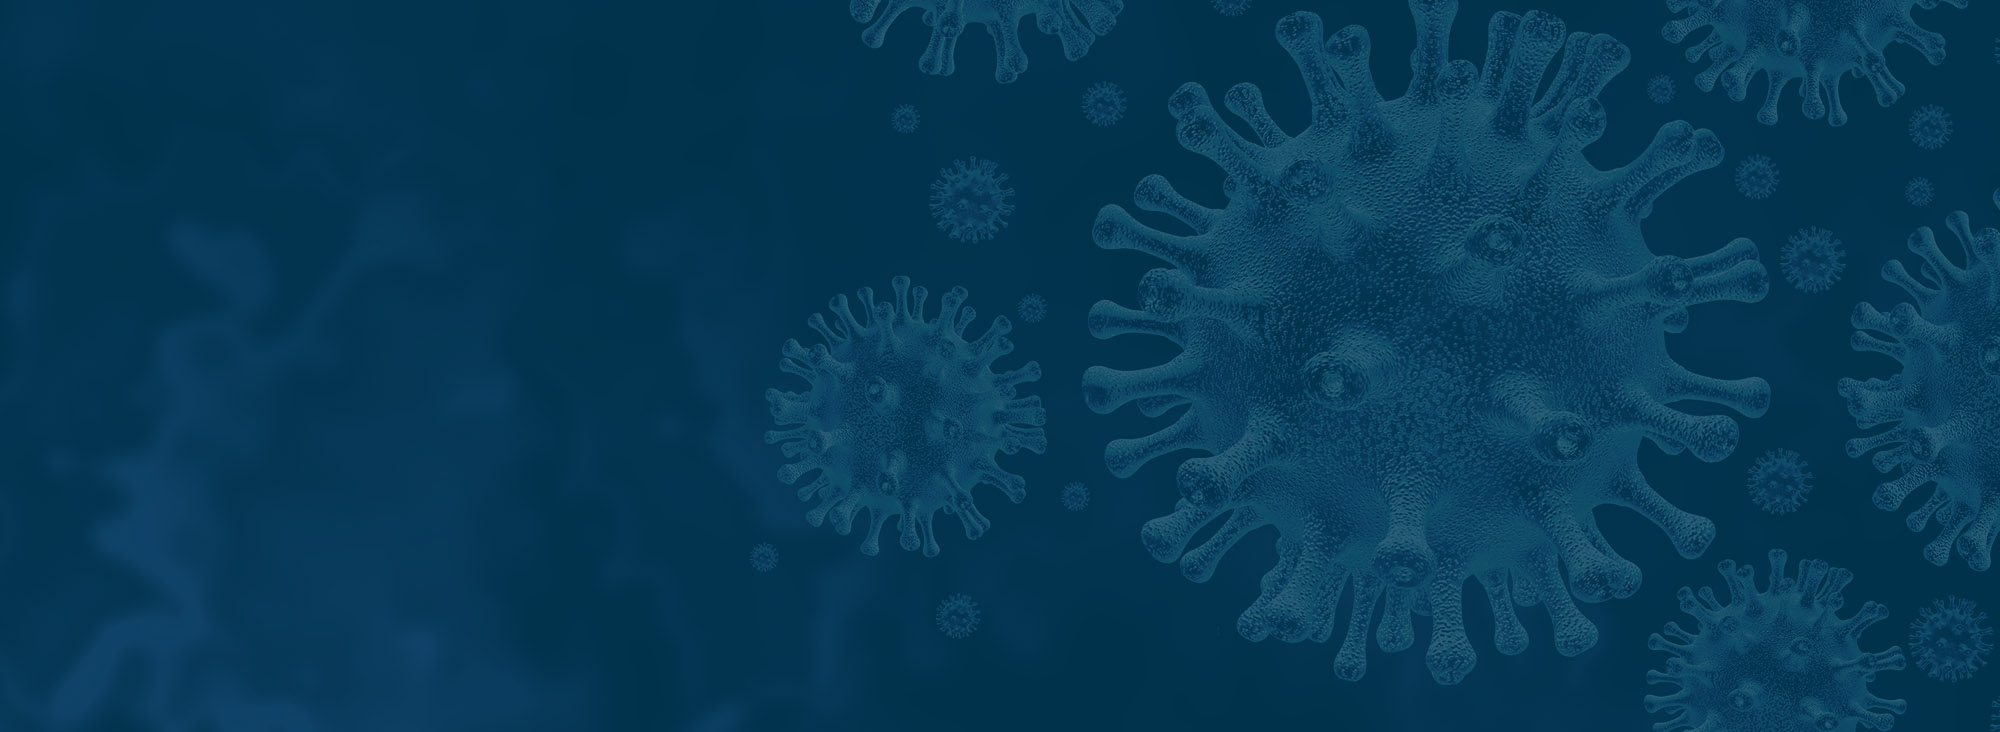 Virus-Microscopic-Blue-Hero